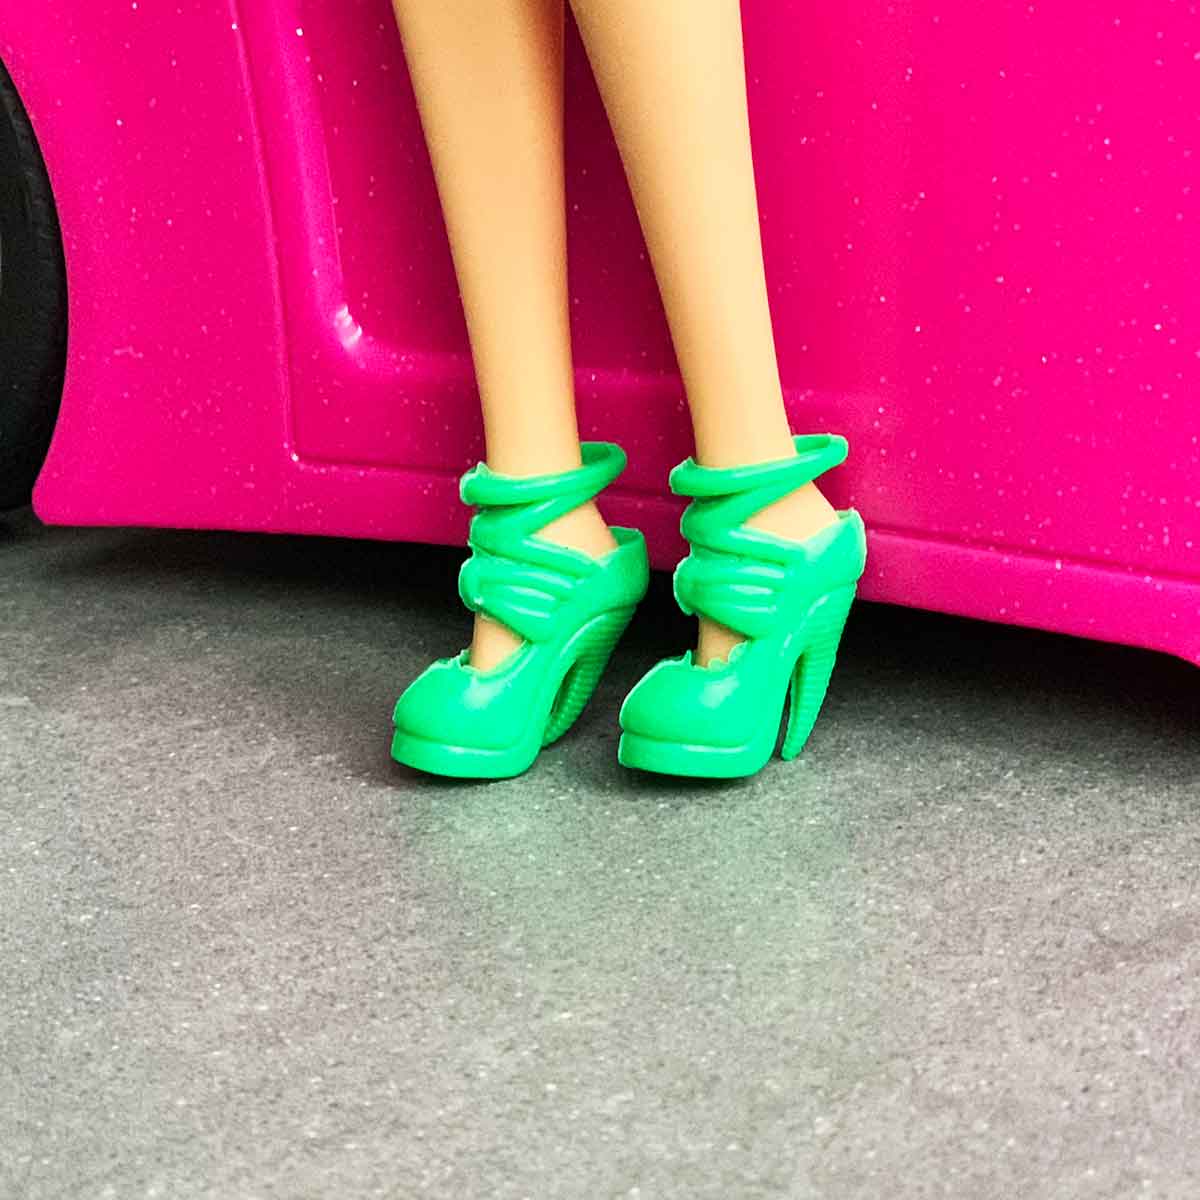 Barbie schoenen groene pumps met strik en sierlijke veters